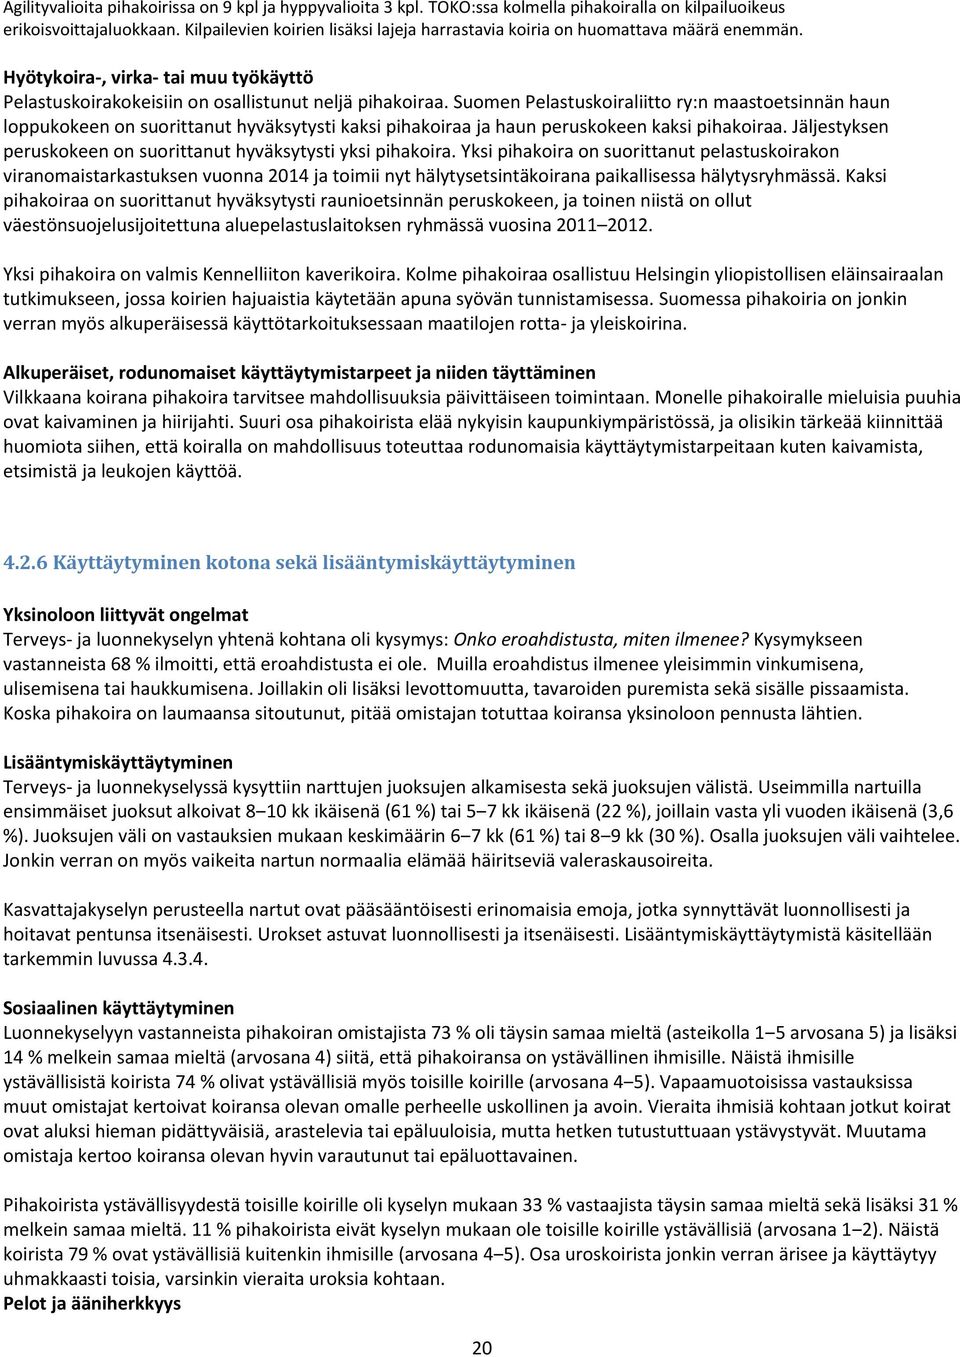 Suomen Pelastuskoiraliitto ry:n maastoetsinnän haun loppukokeen on suorittanut hyväksytysti kaksi pihakoiraa ja haun peruskokeen kaksi pihakoiraa.